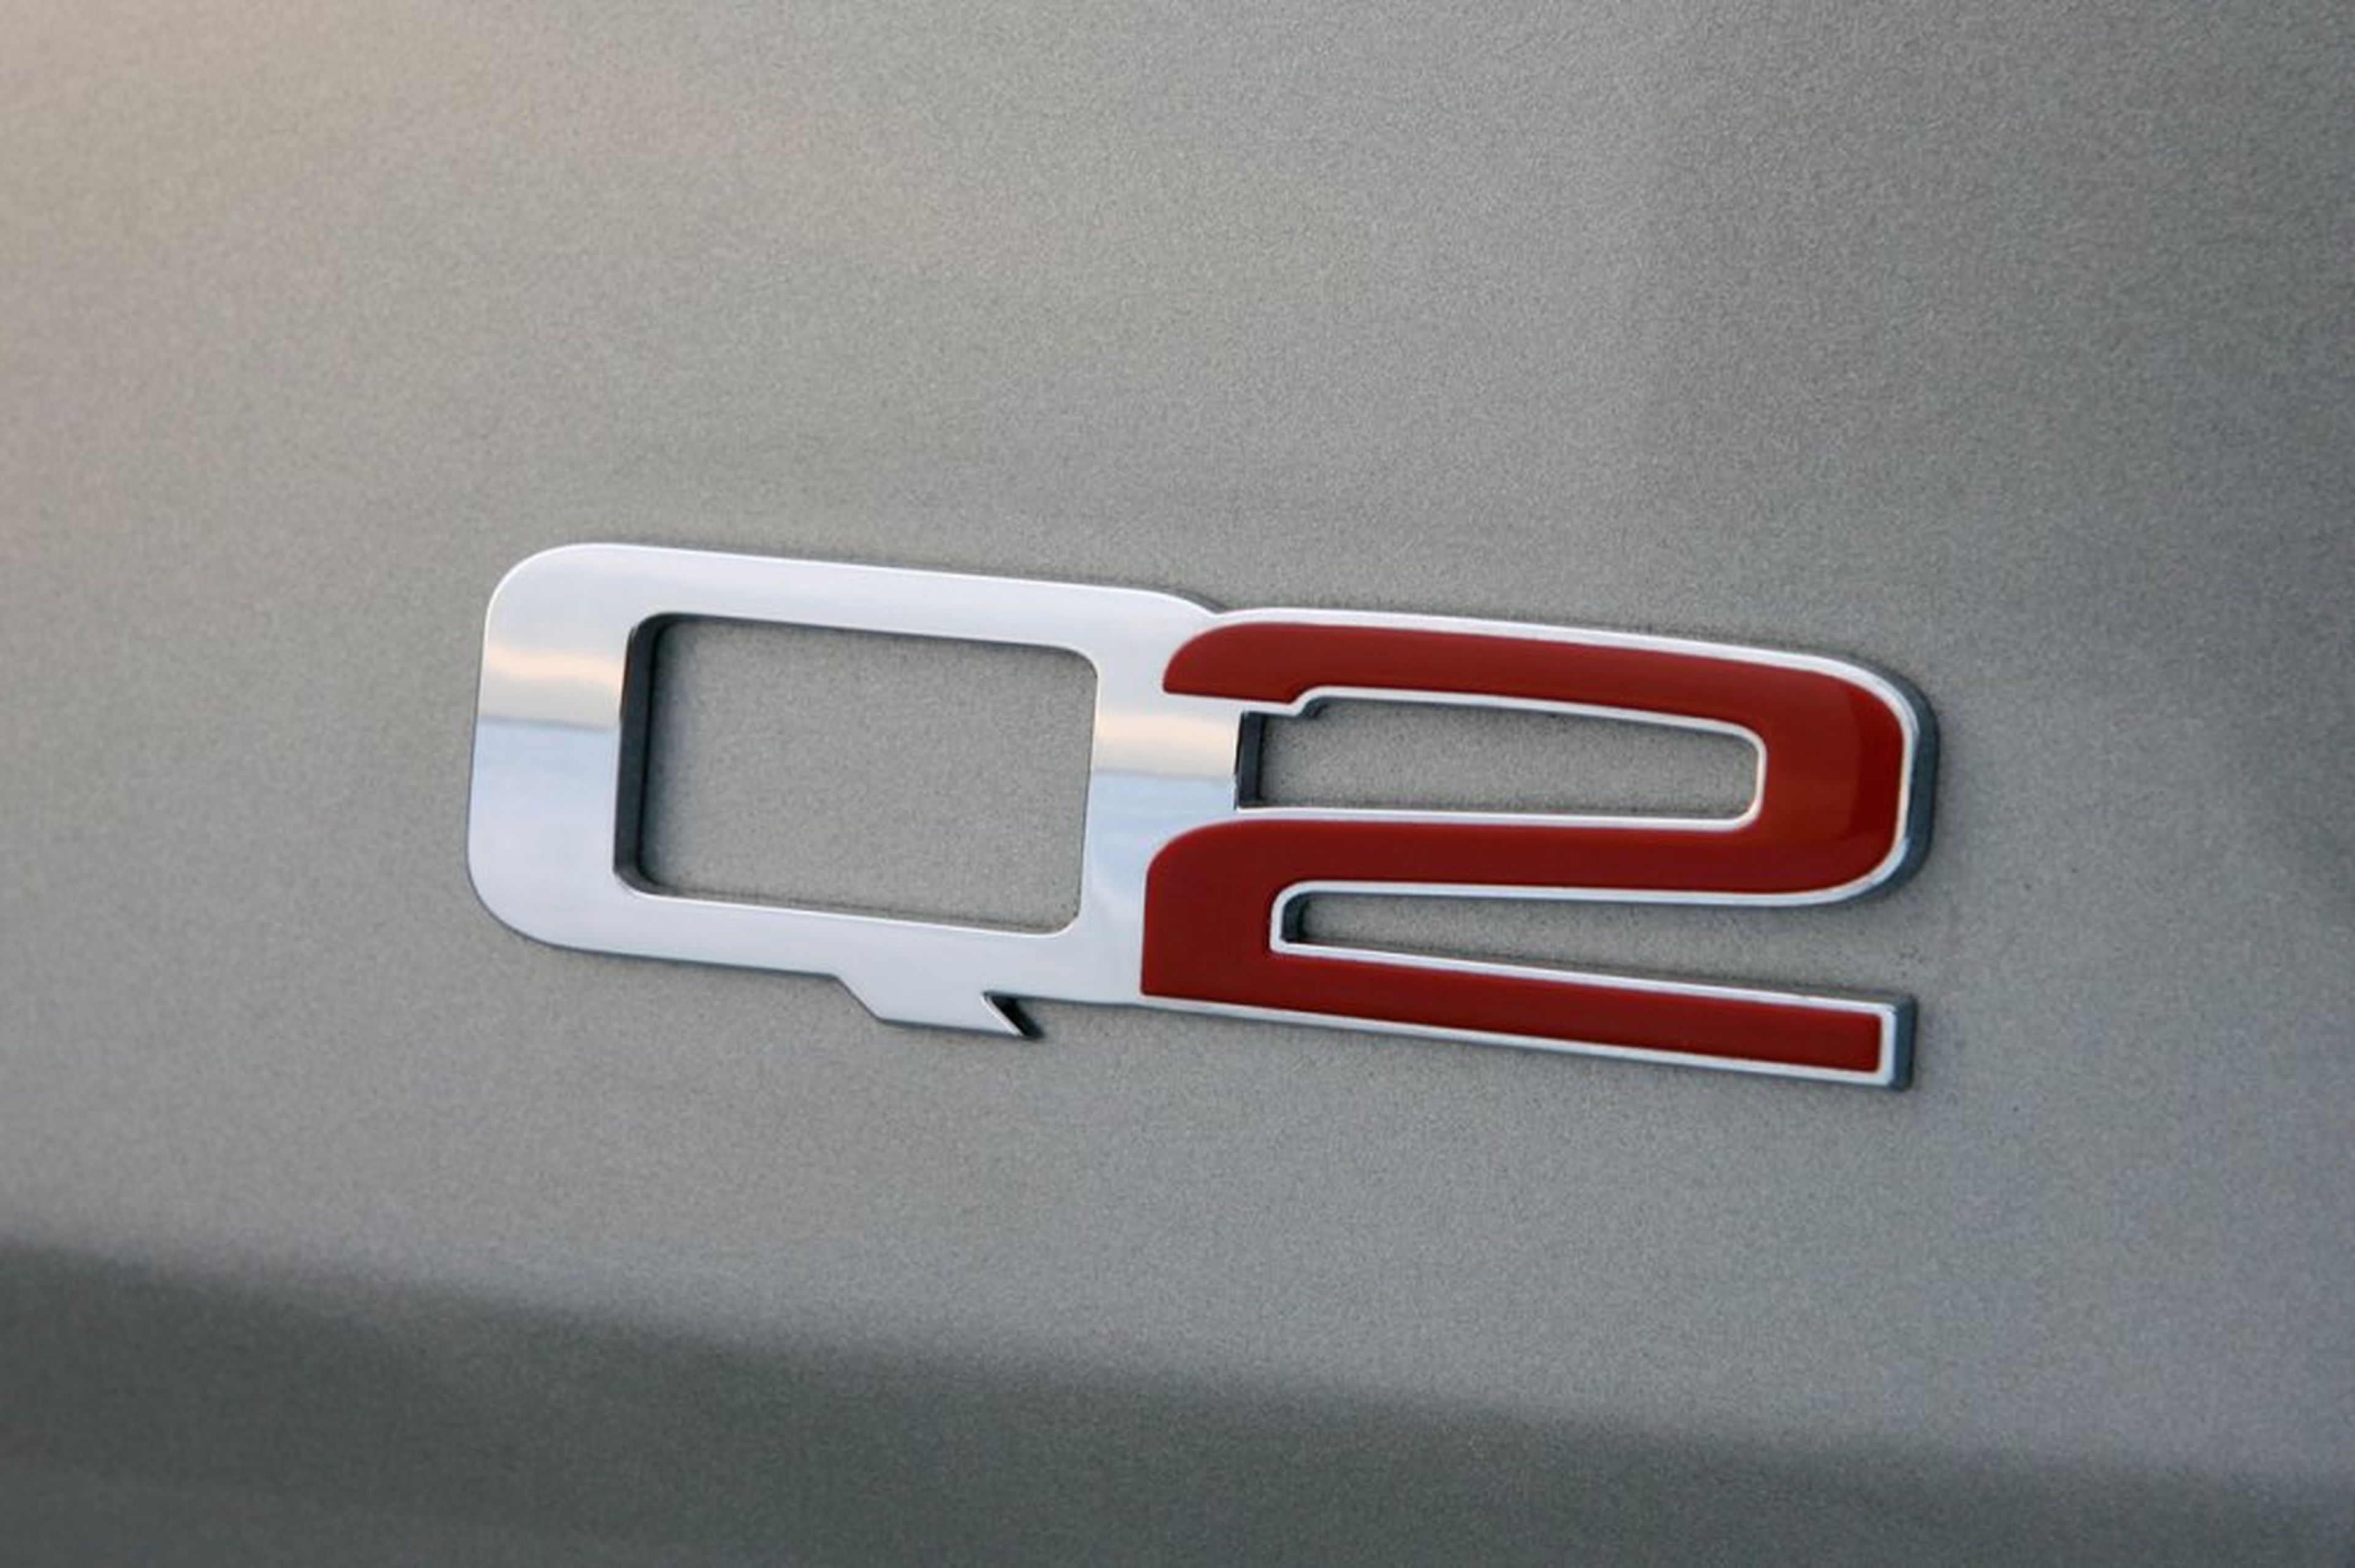 Fiat no quiere vender las denominaciones Q2 y Q4 a Audi